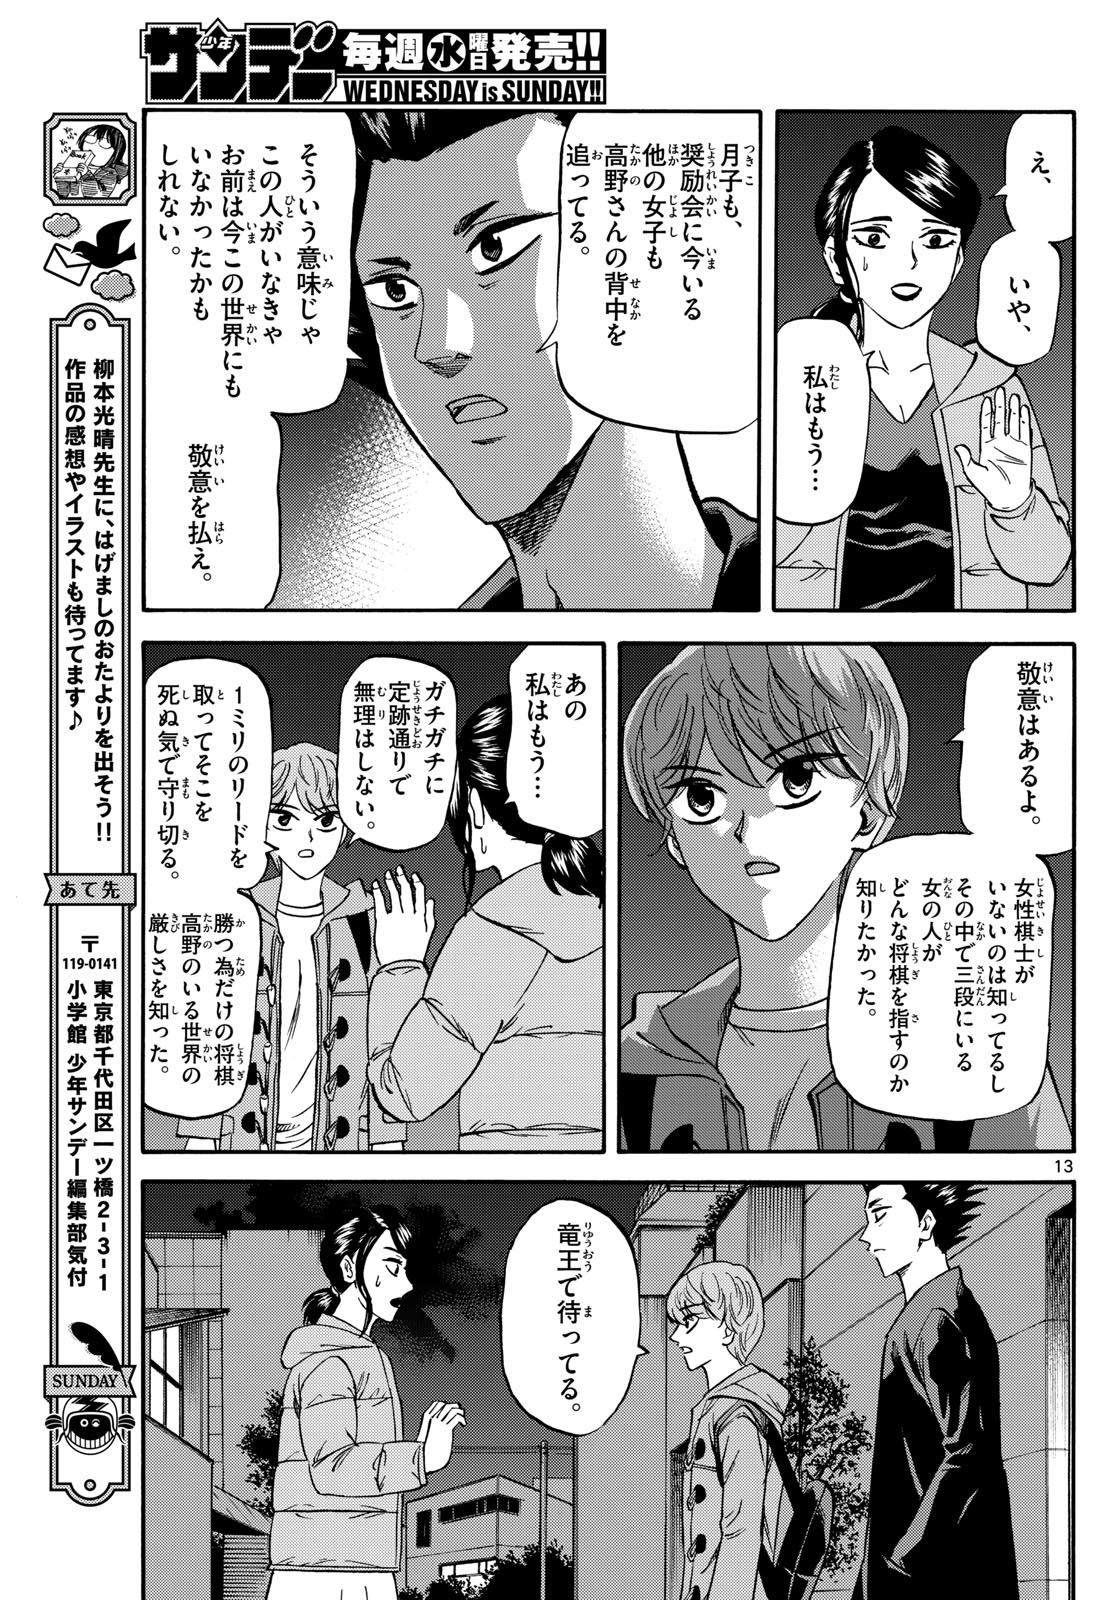 Tatsu to Ichigo - Chapter 173 - Page 13